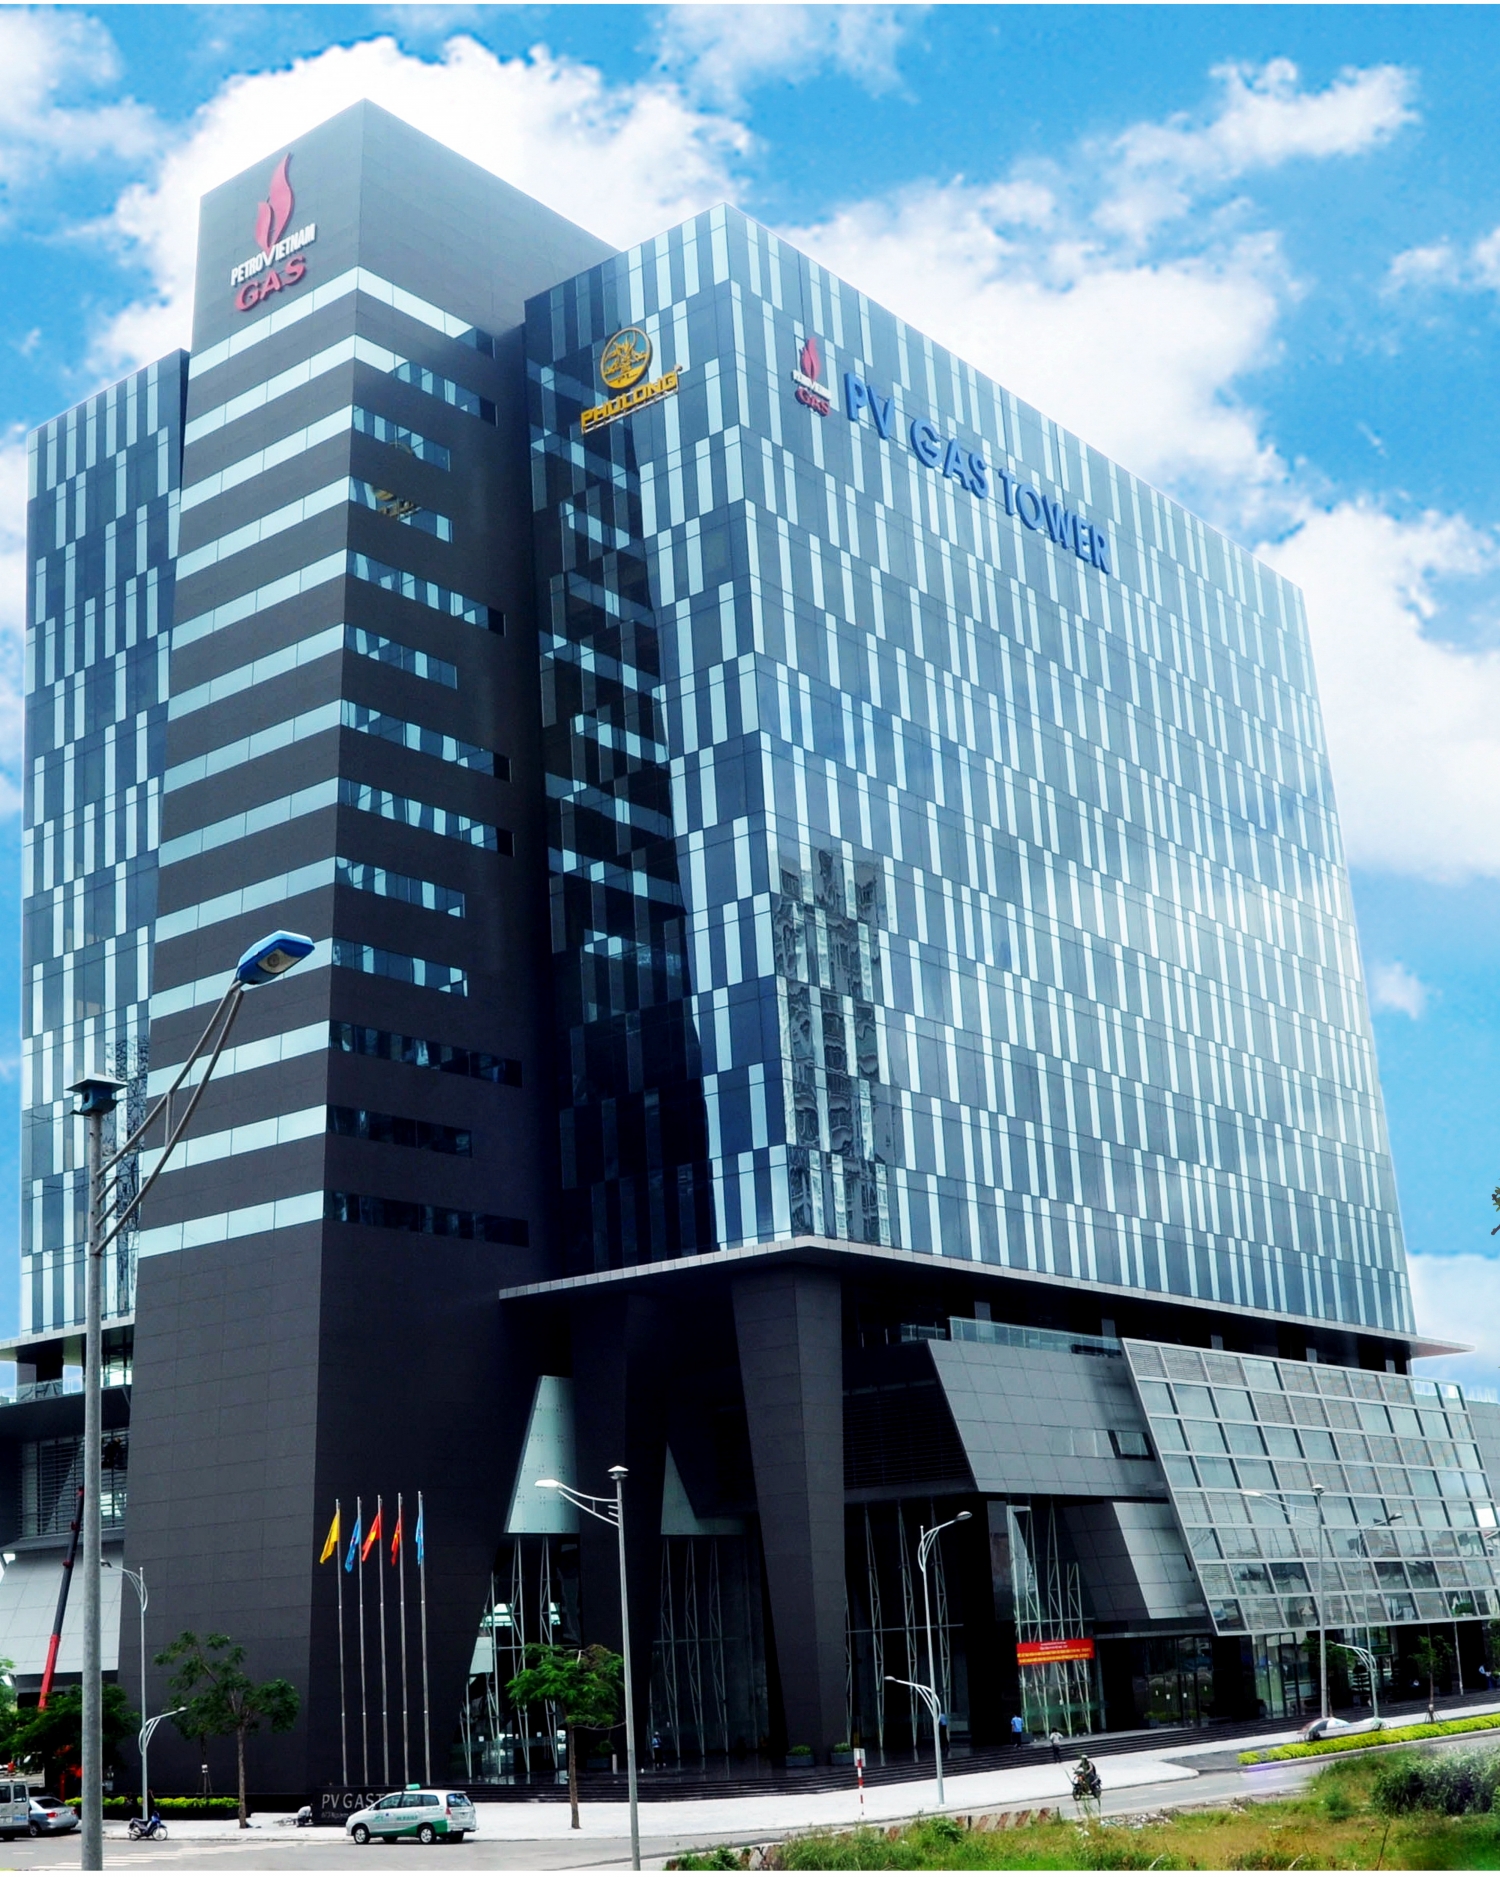 Tòa nhà PV GAS Tower - nơi đặt trụ sở của PV GAS tại Tp.HCM 